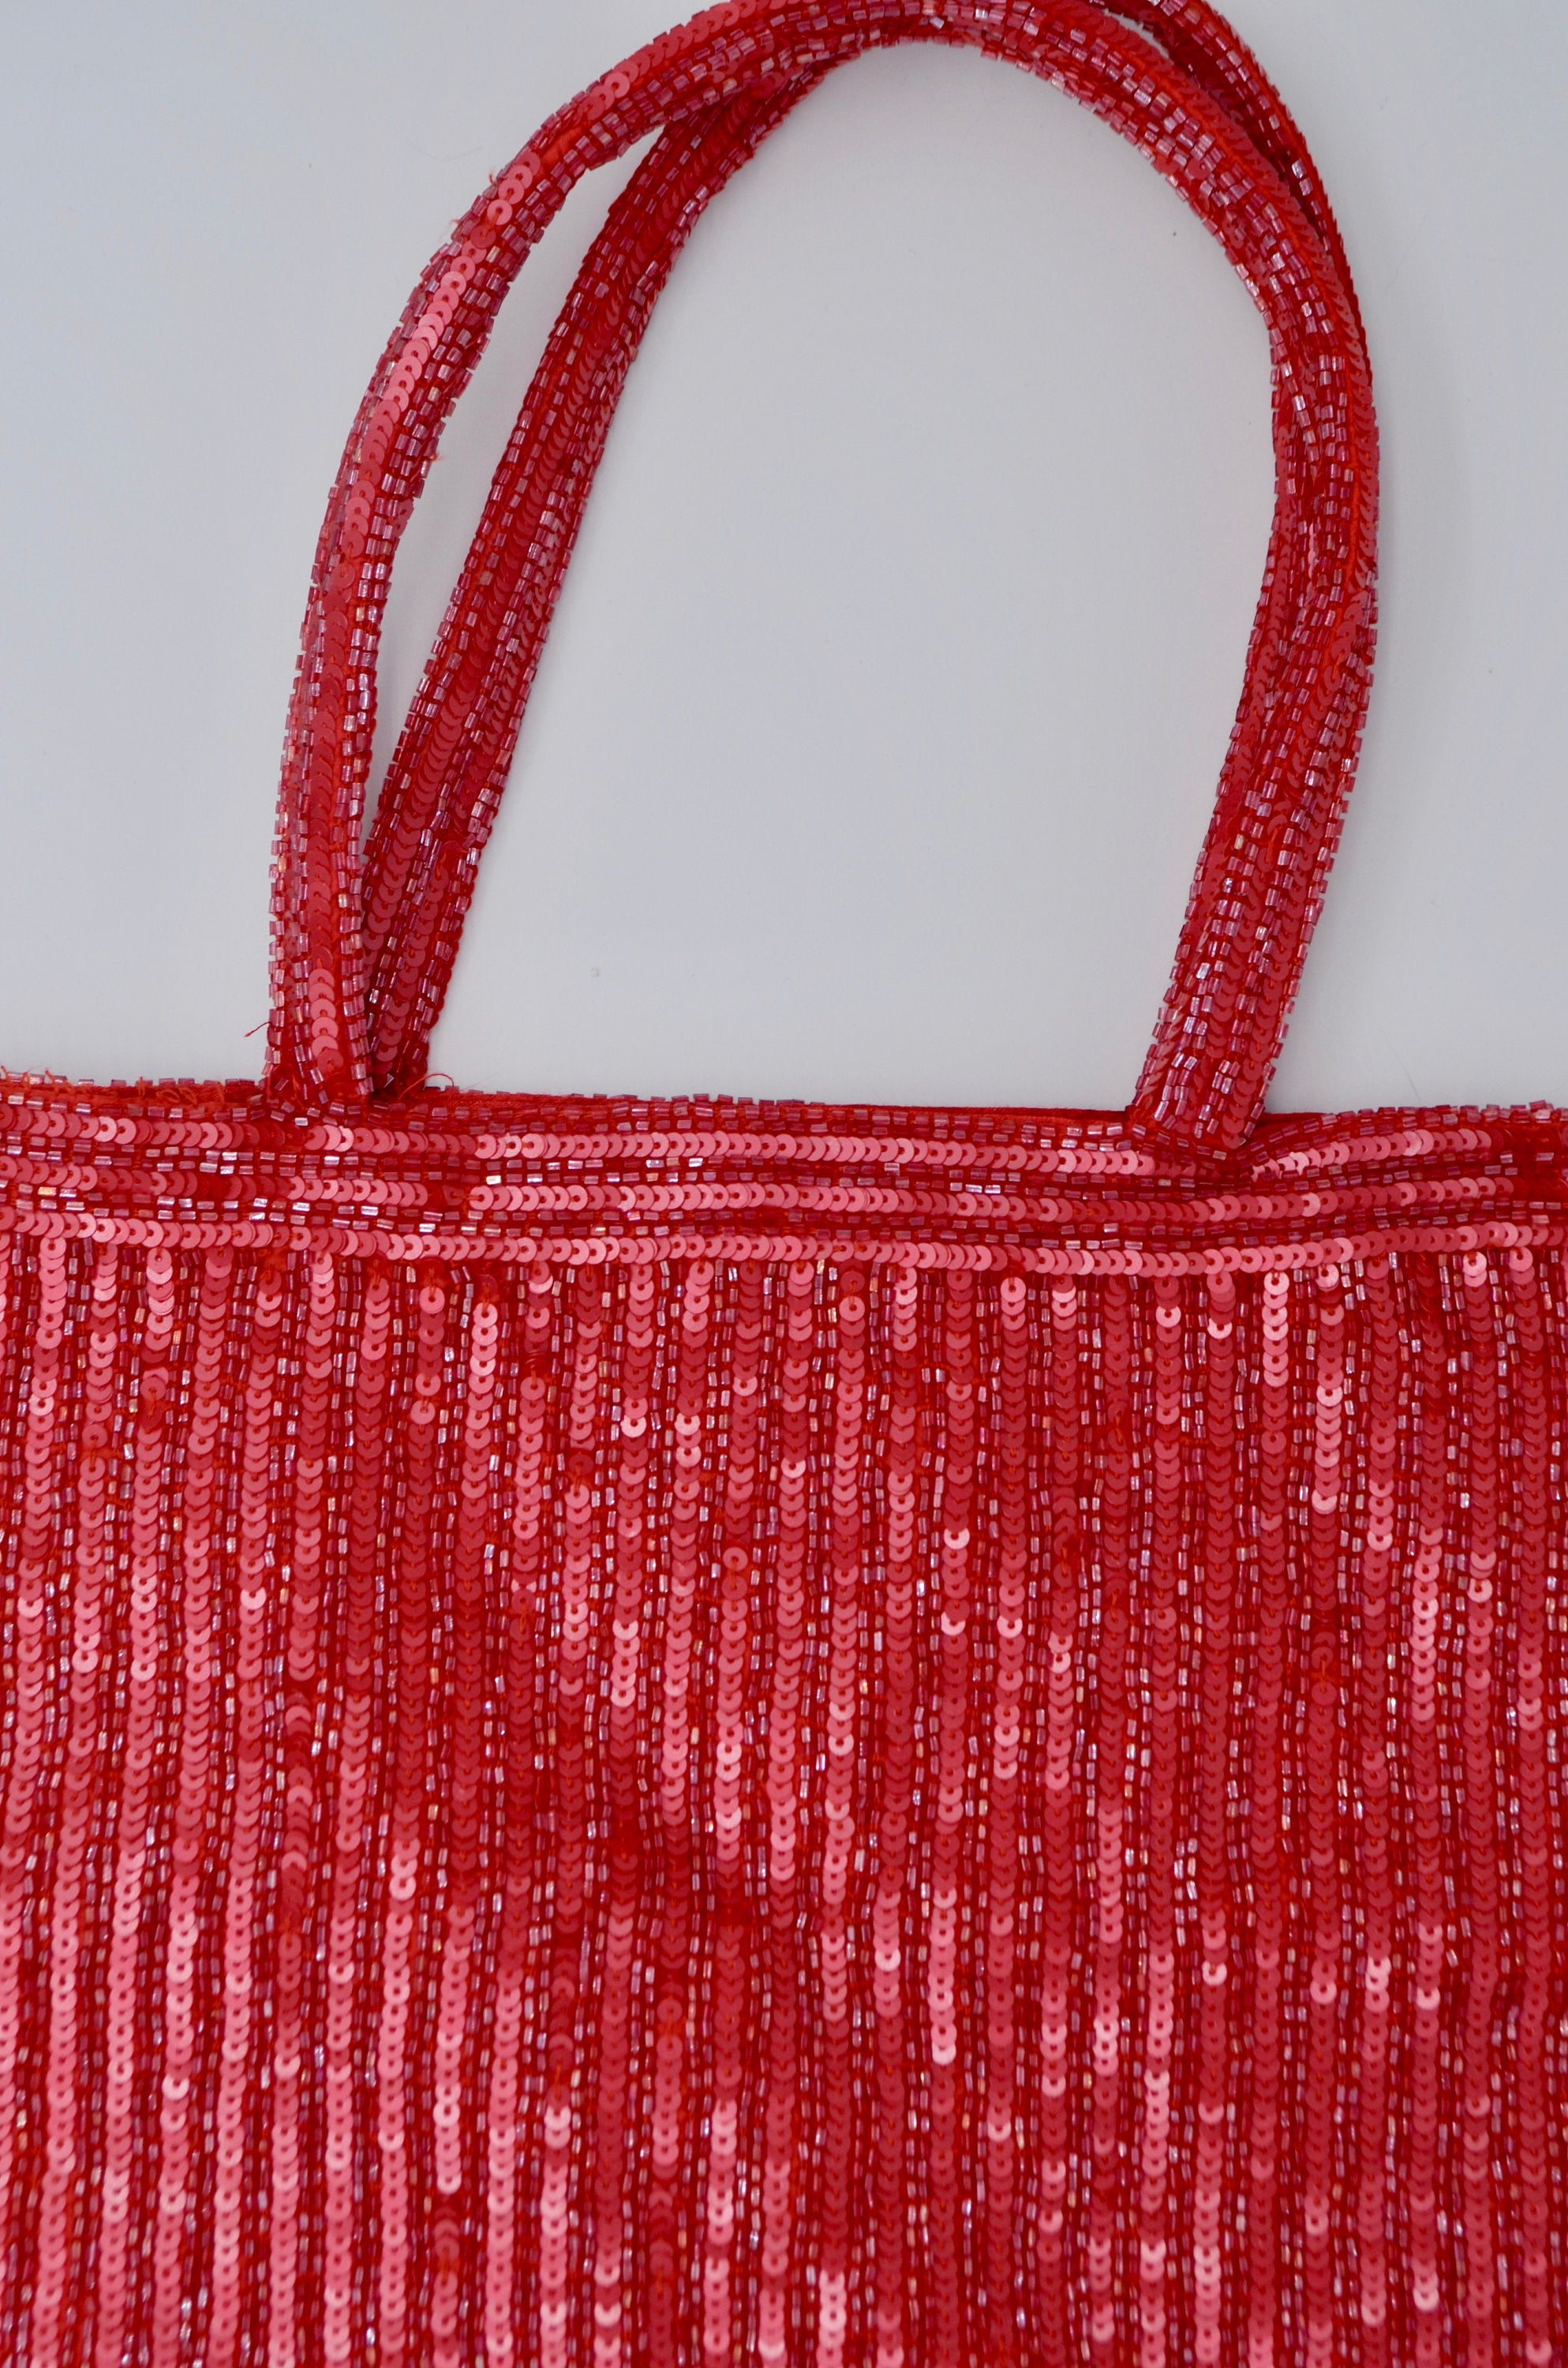 Moyna Red Sequins Tote Bag Handbag Top Handle Handmade Bohemian Fashion Style